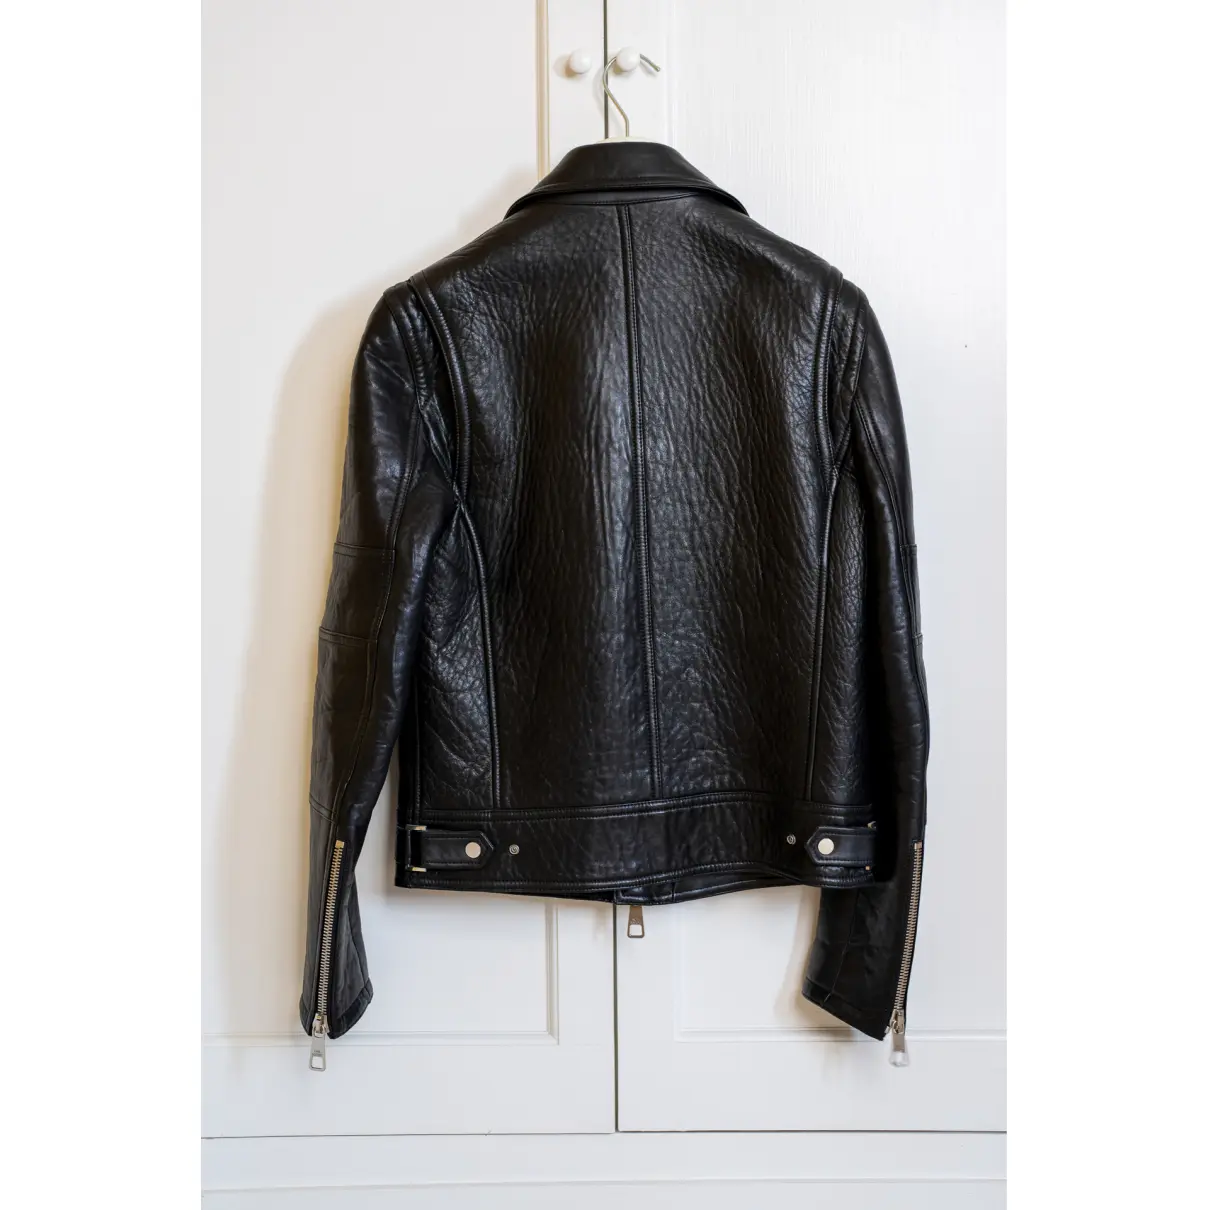 Buy Neil Barrett Leather jacket online